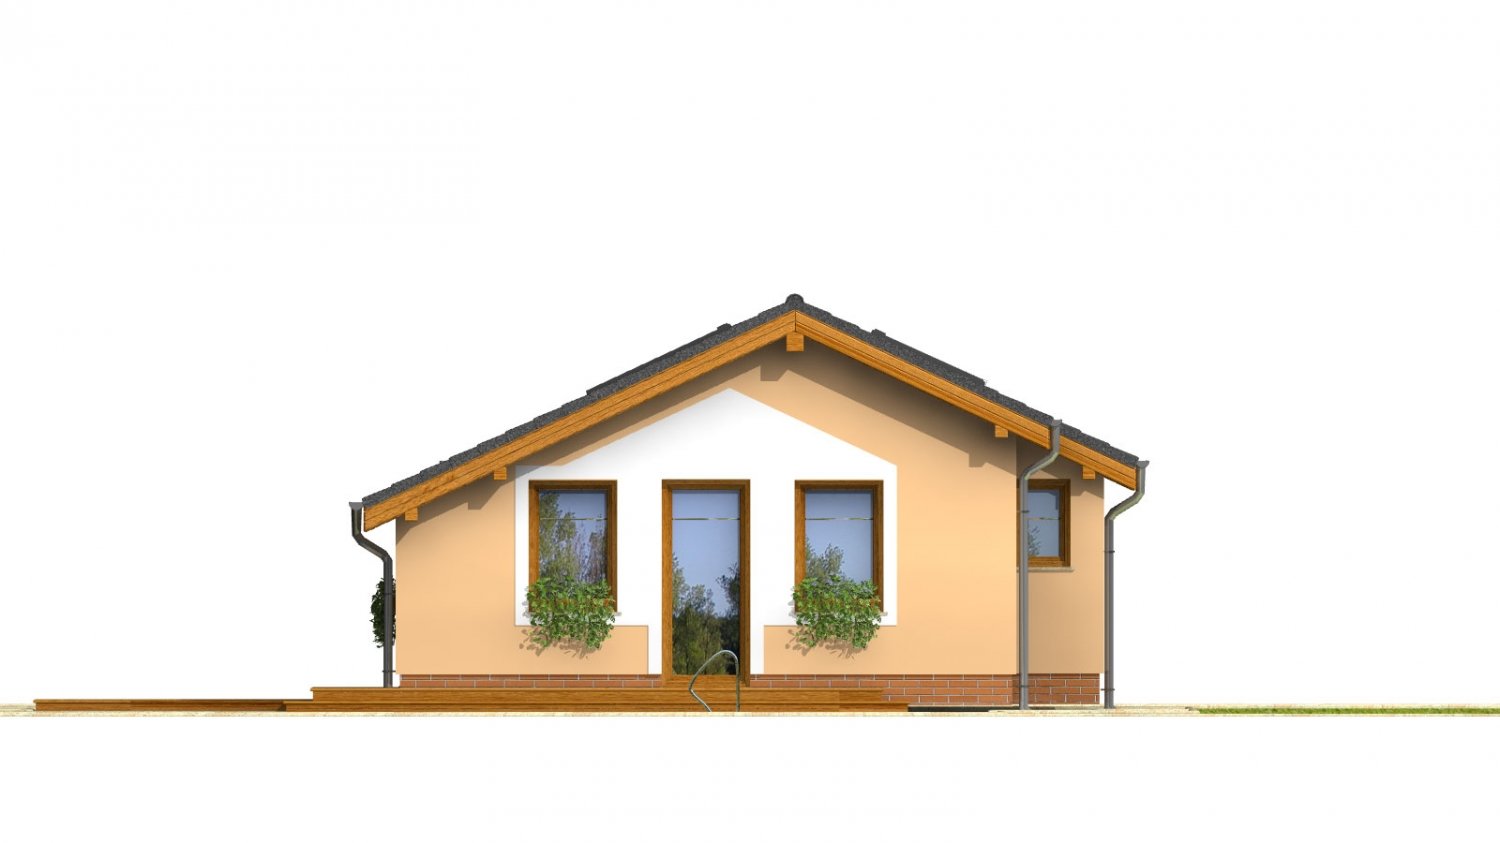 Pohľad 4. - Levný úzký dům na malý pozemek se sedlovou střechou, prosvětlený střešními okny Velux. Efekt podkroví na přízemí.